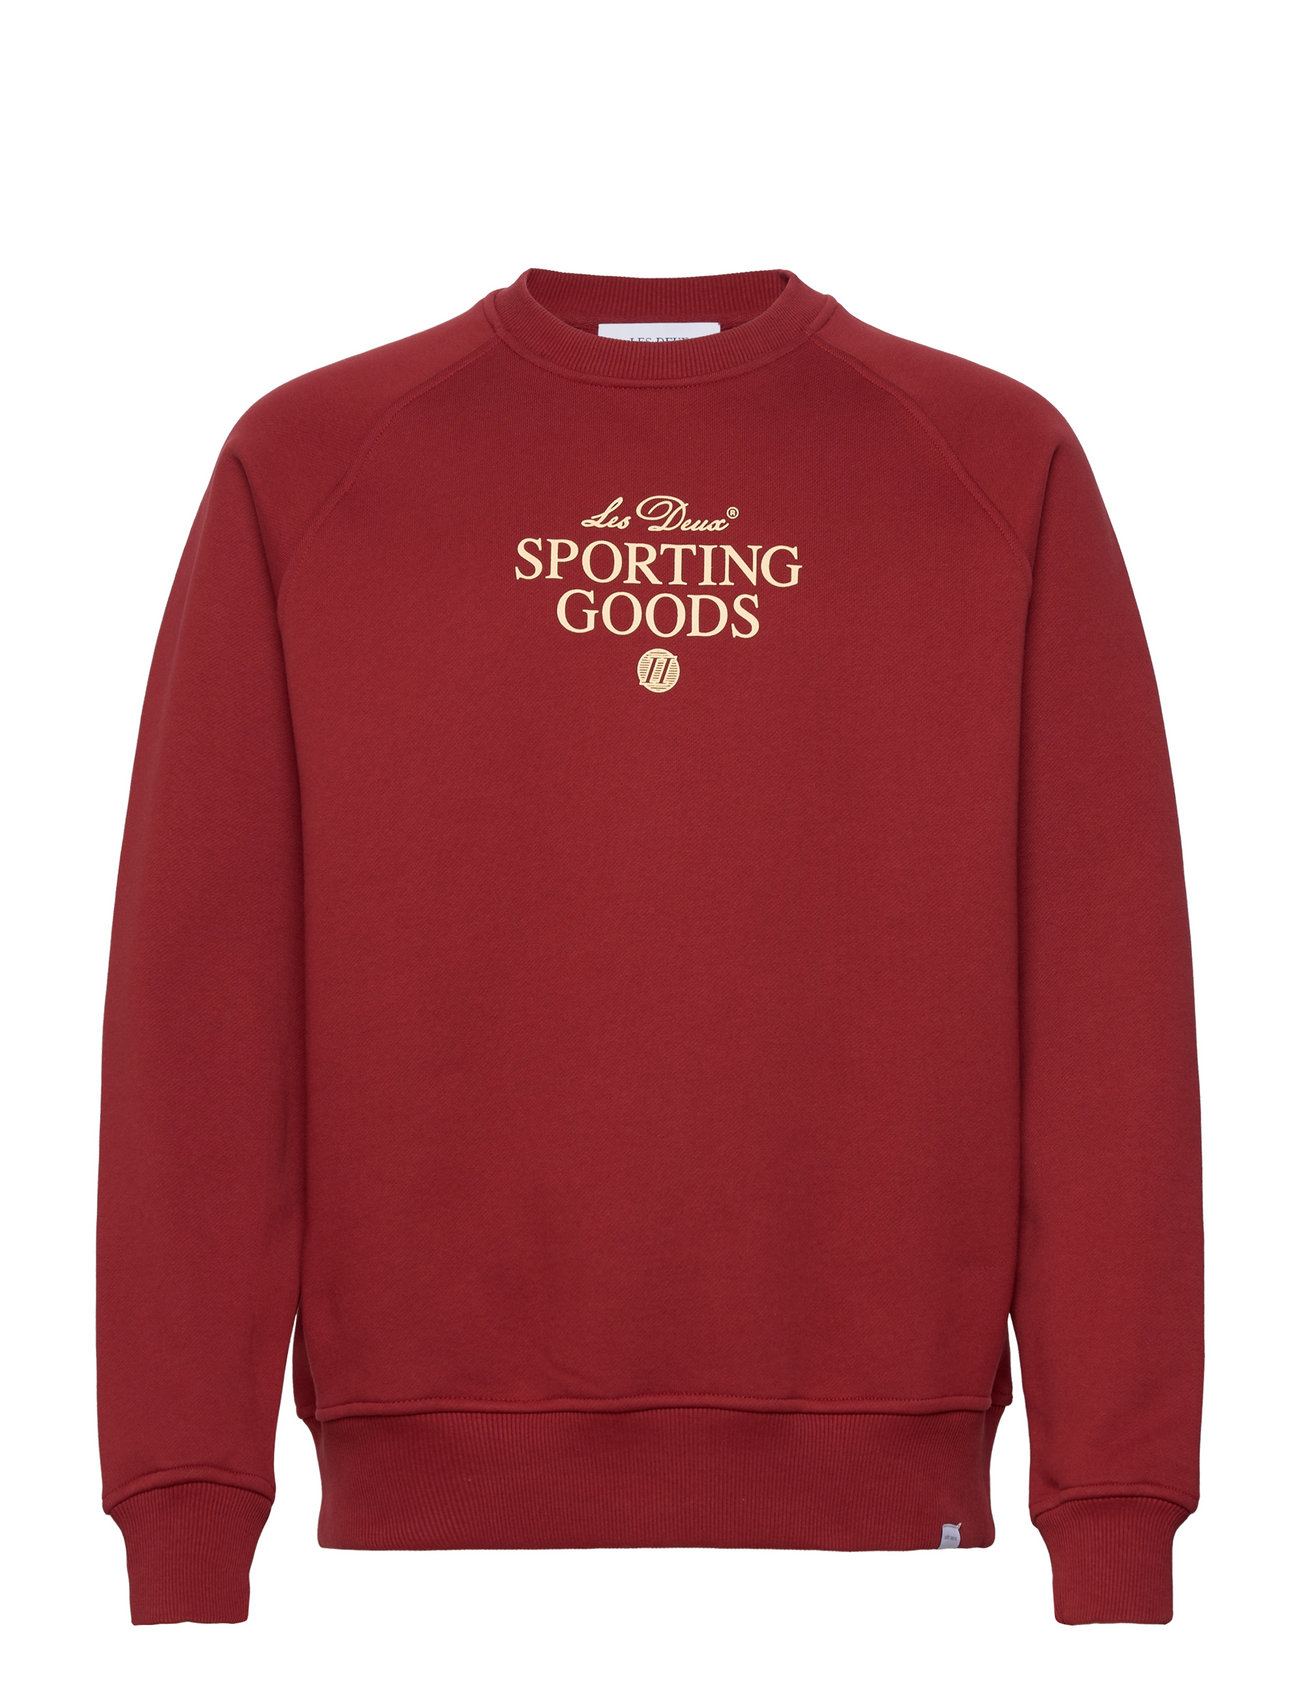 Sporting Goods Sweatshirt 2.0 Tops Sweatshirts & Hoodies Sweatshirts Red Les Deux